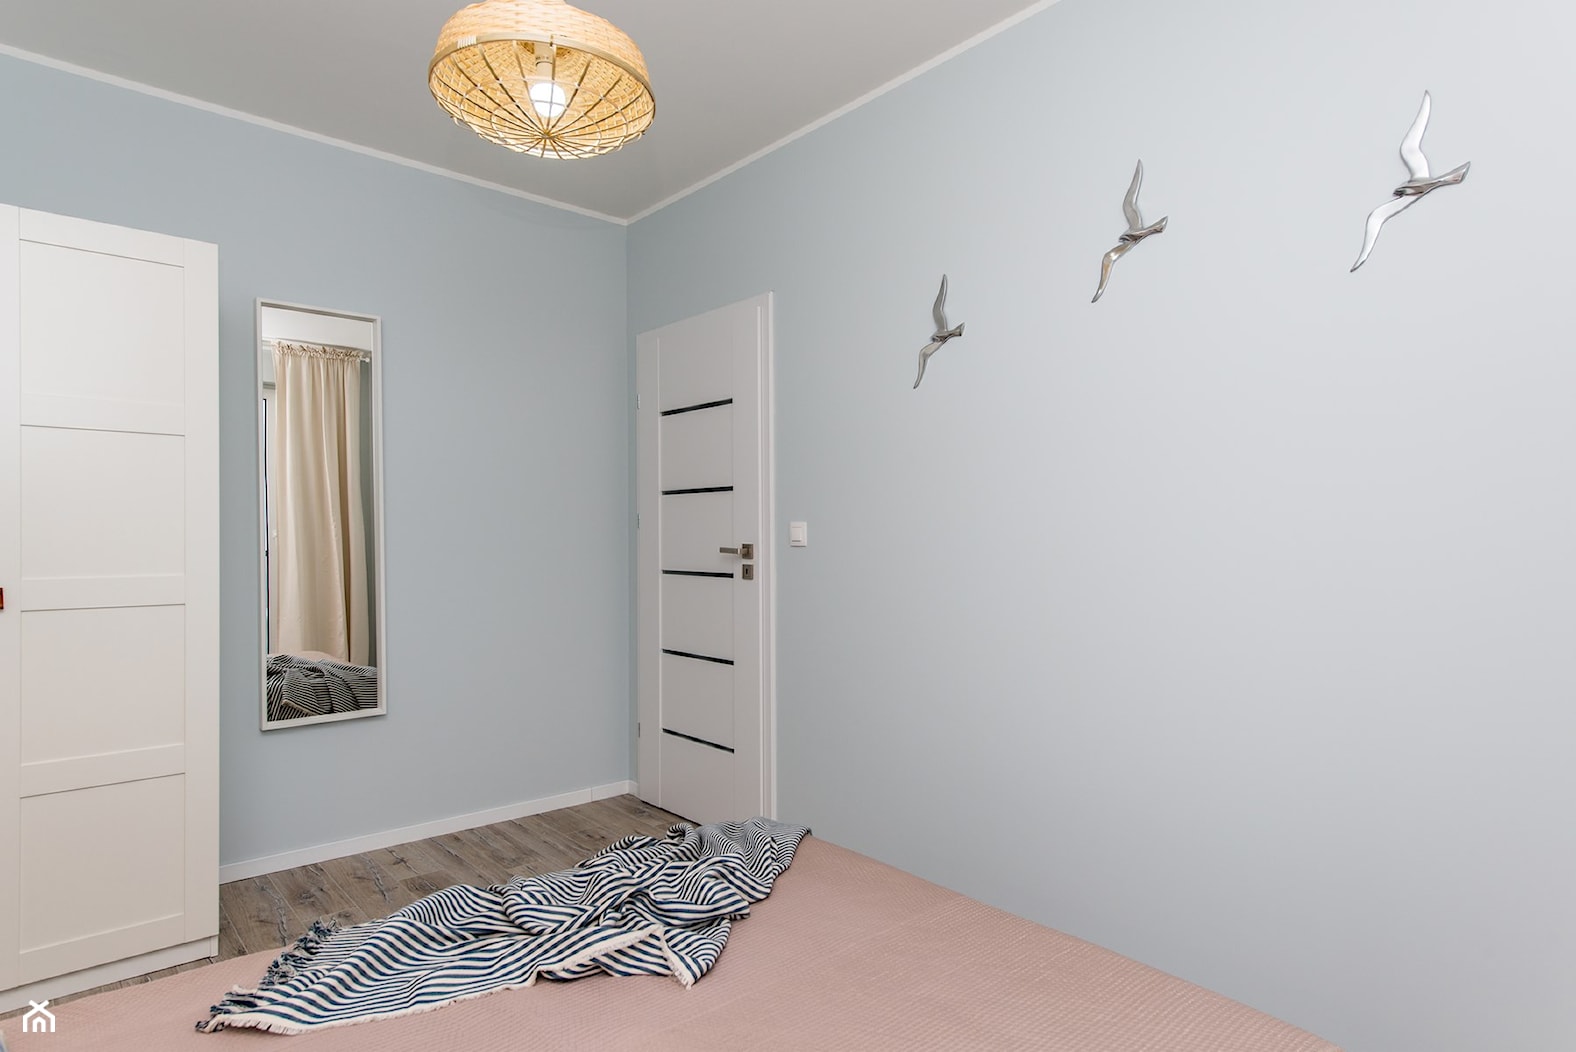 GDAŃSK | 40M2 - Średnia szara sypialnia, styl nowoczesny - zdjęcie od KartA Pracownia Projektowa Katarzyna Cimochowska - Homebook